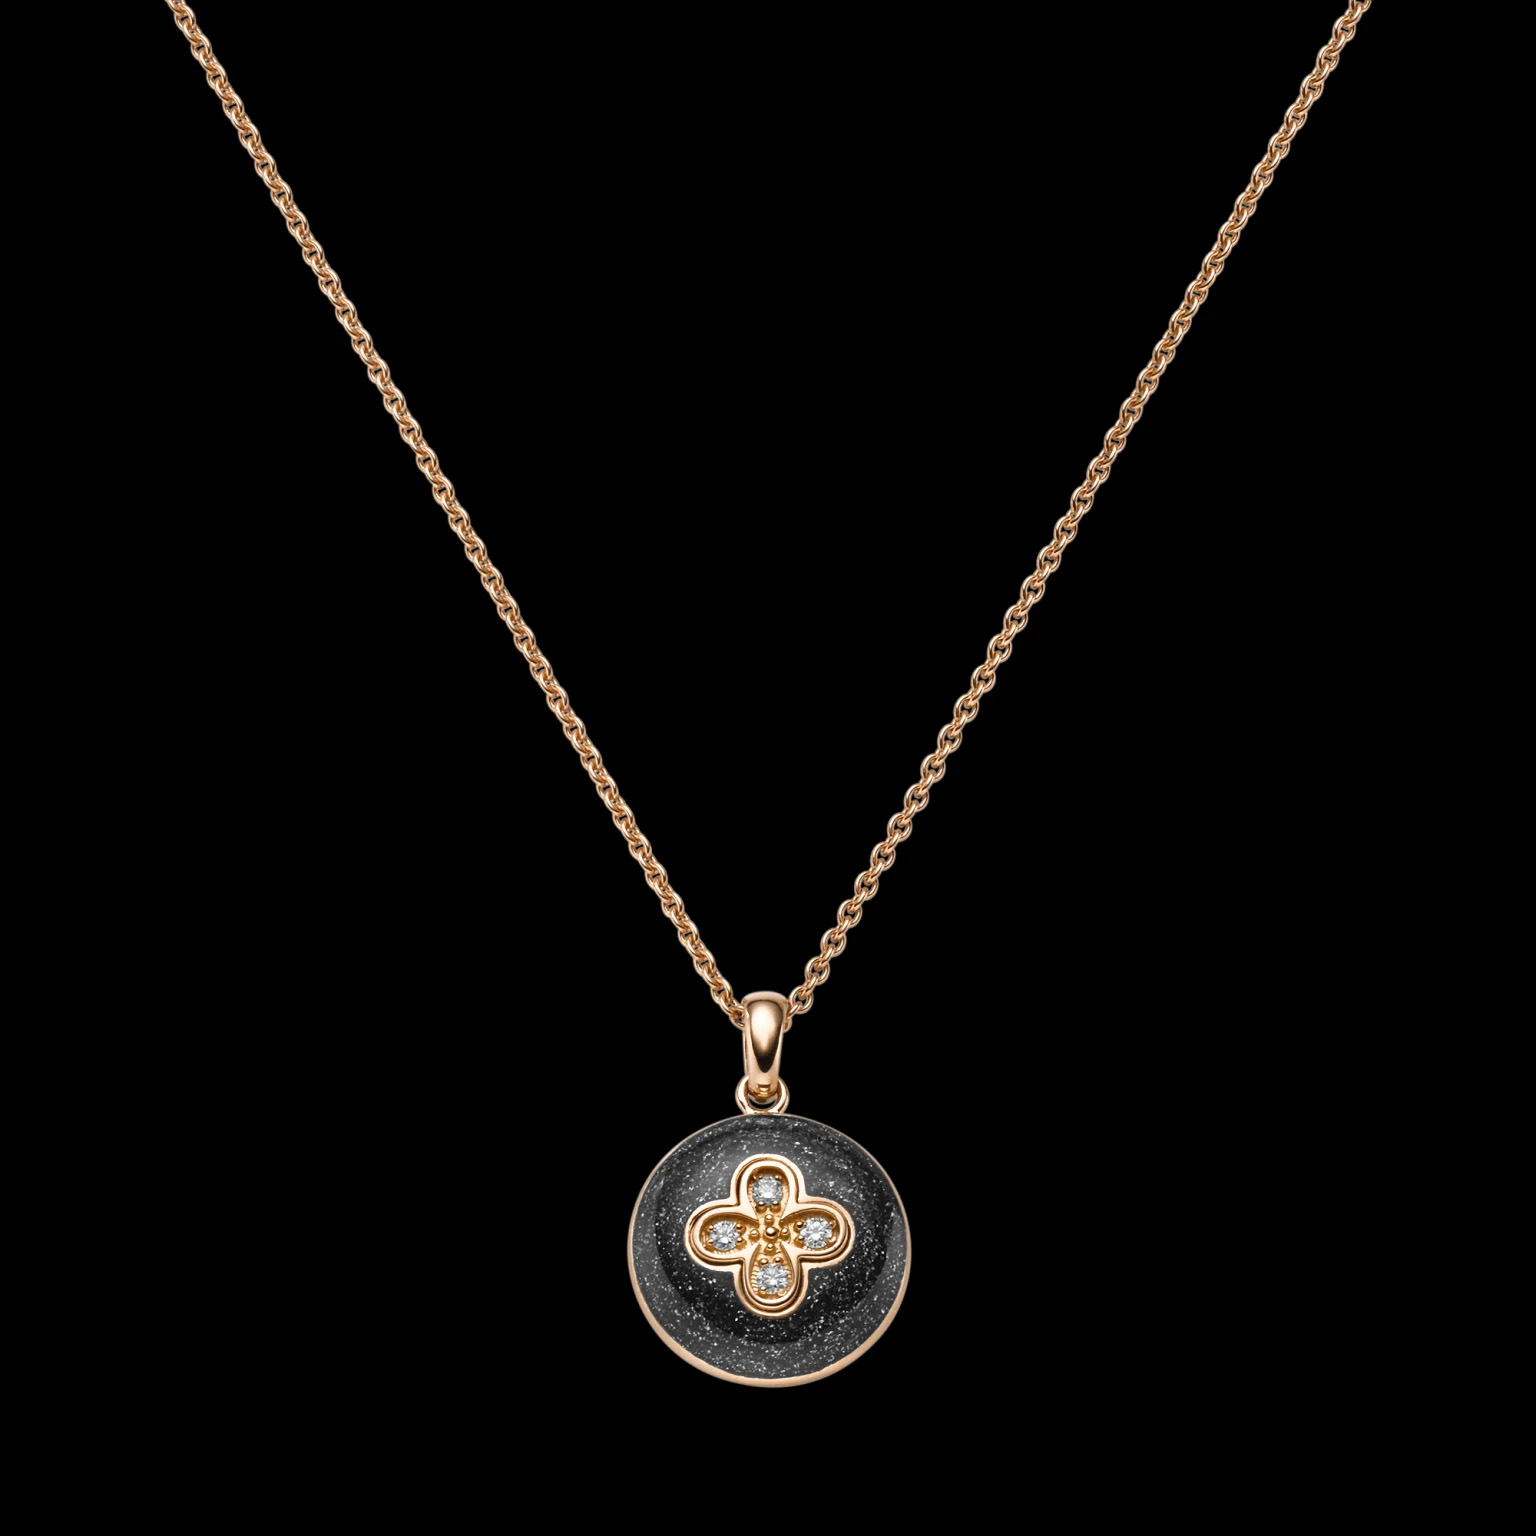 الجملة OEM / ODM المجوهرات المخصصة قلادة قلادة المجوهرات الفضية بالجملة مباشرة من مصنع المجوهرات الفضية لدينا